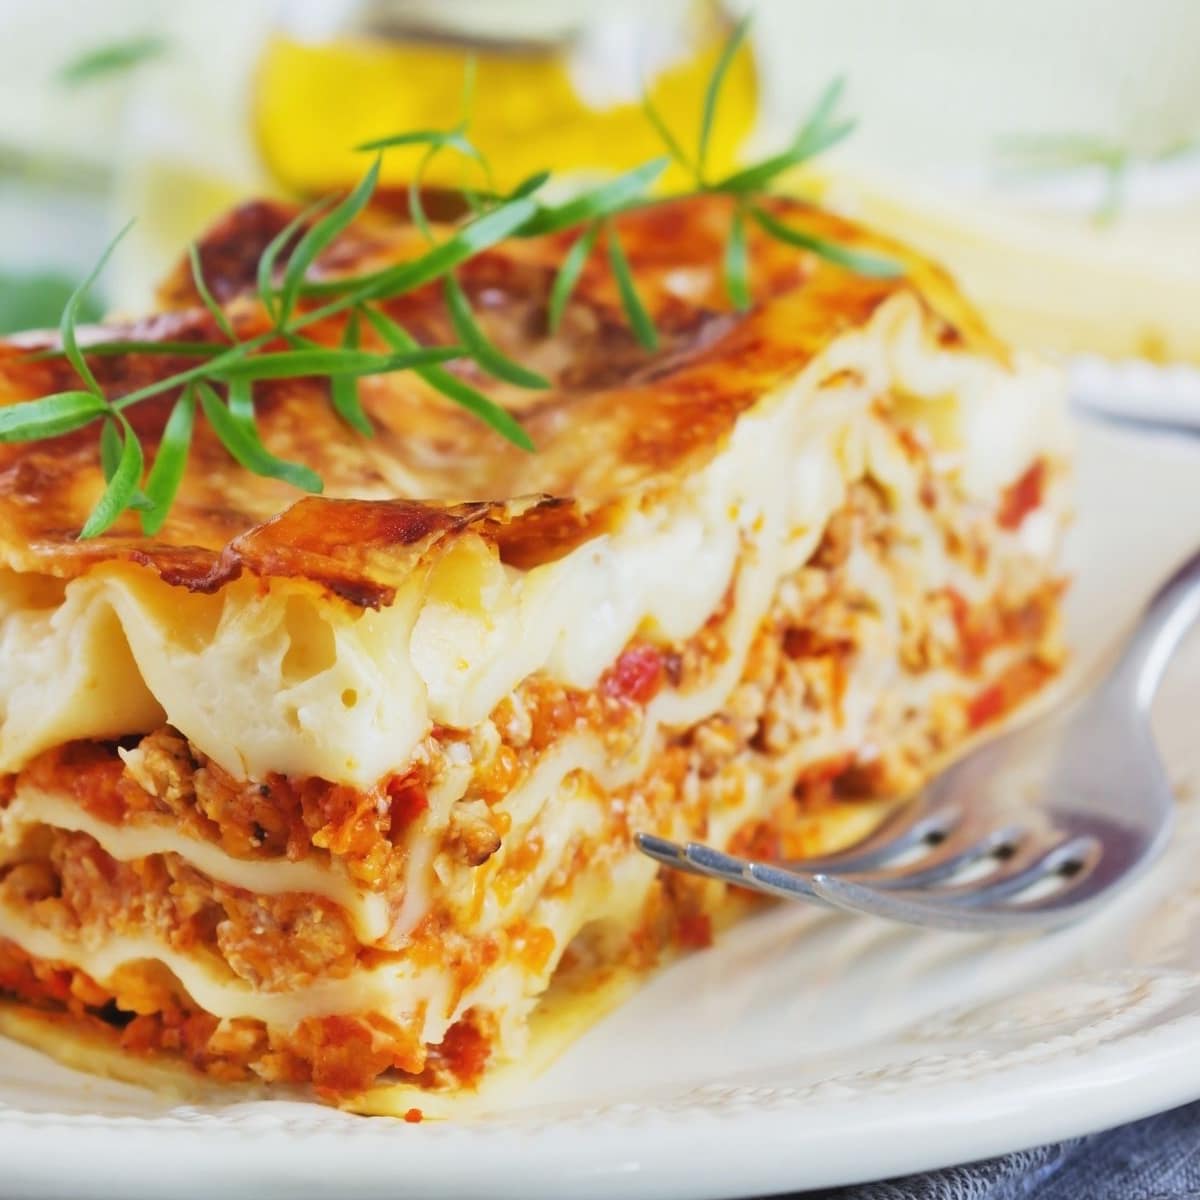 Gambar persegi lasagna daging irisan dengan saus merah di piring putih.